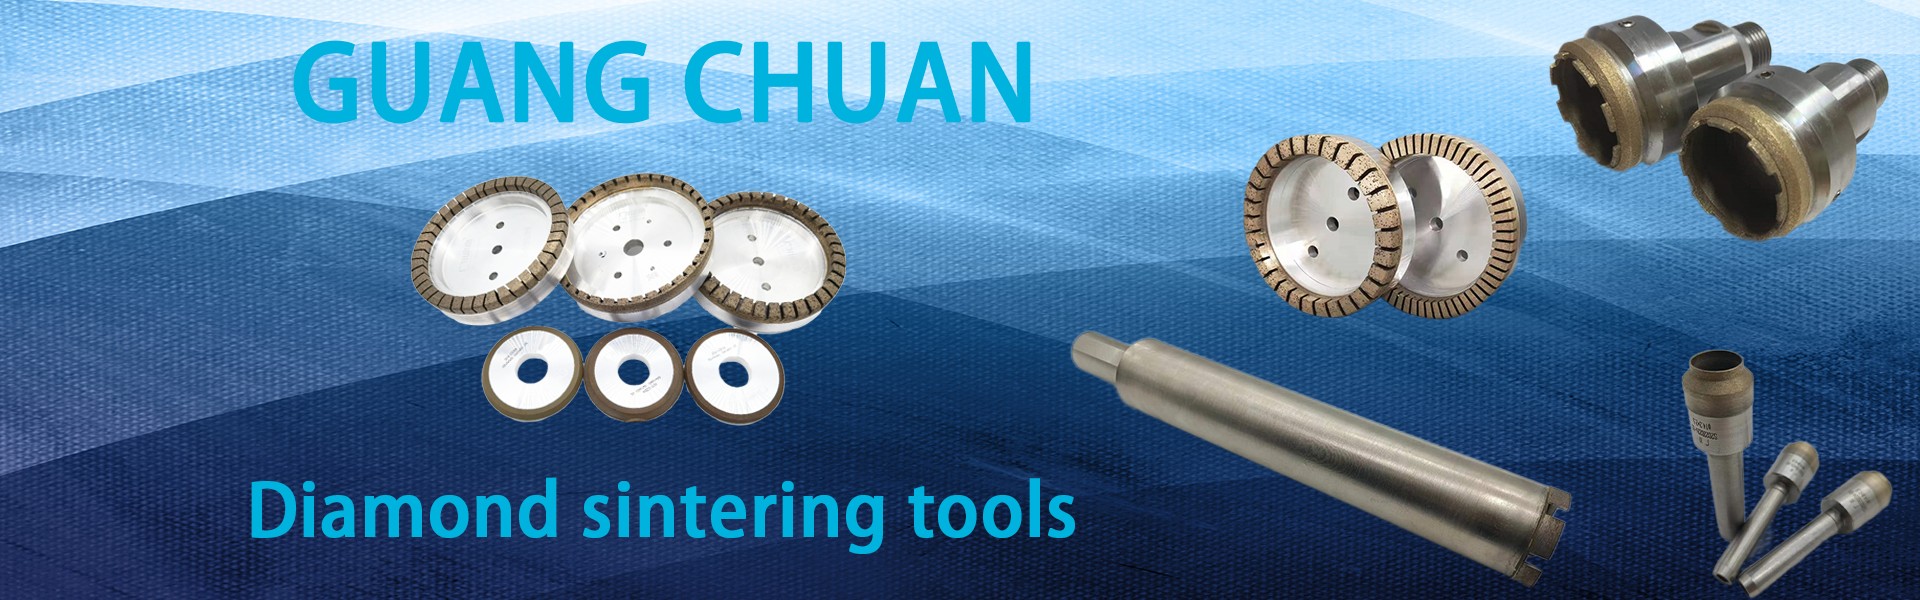 Rodas de moagem de diamante, ferramenta de diamante, brocas,Dongguan Guangchuan Abrasives Technology Co., Ltd